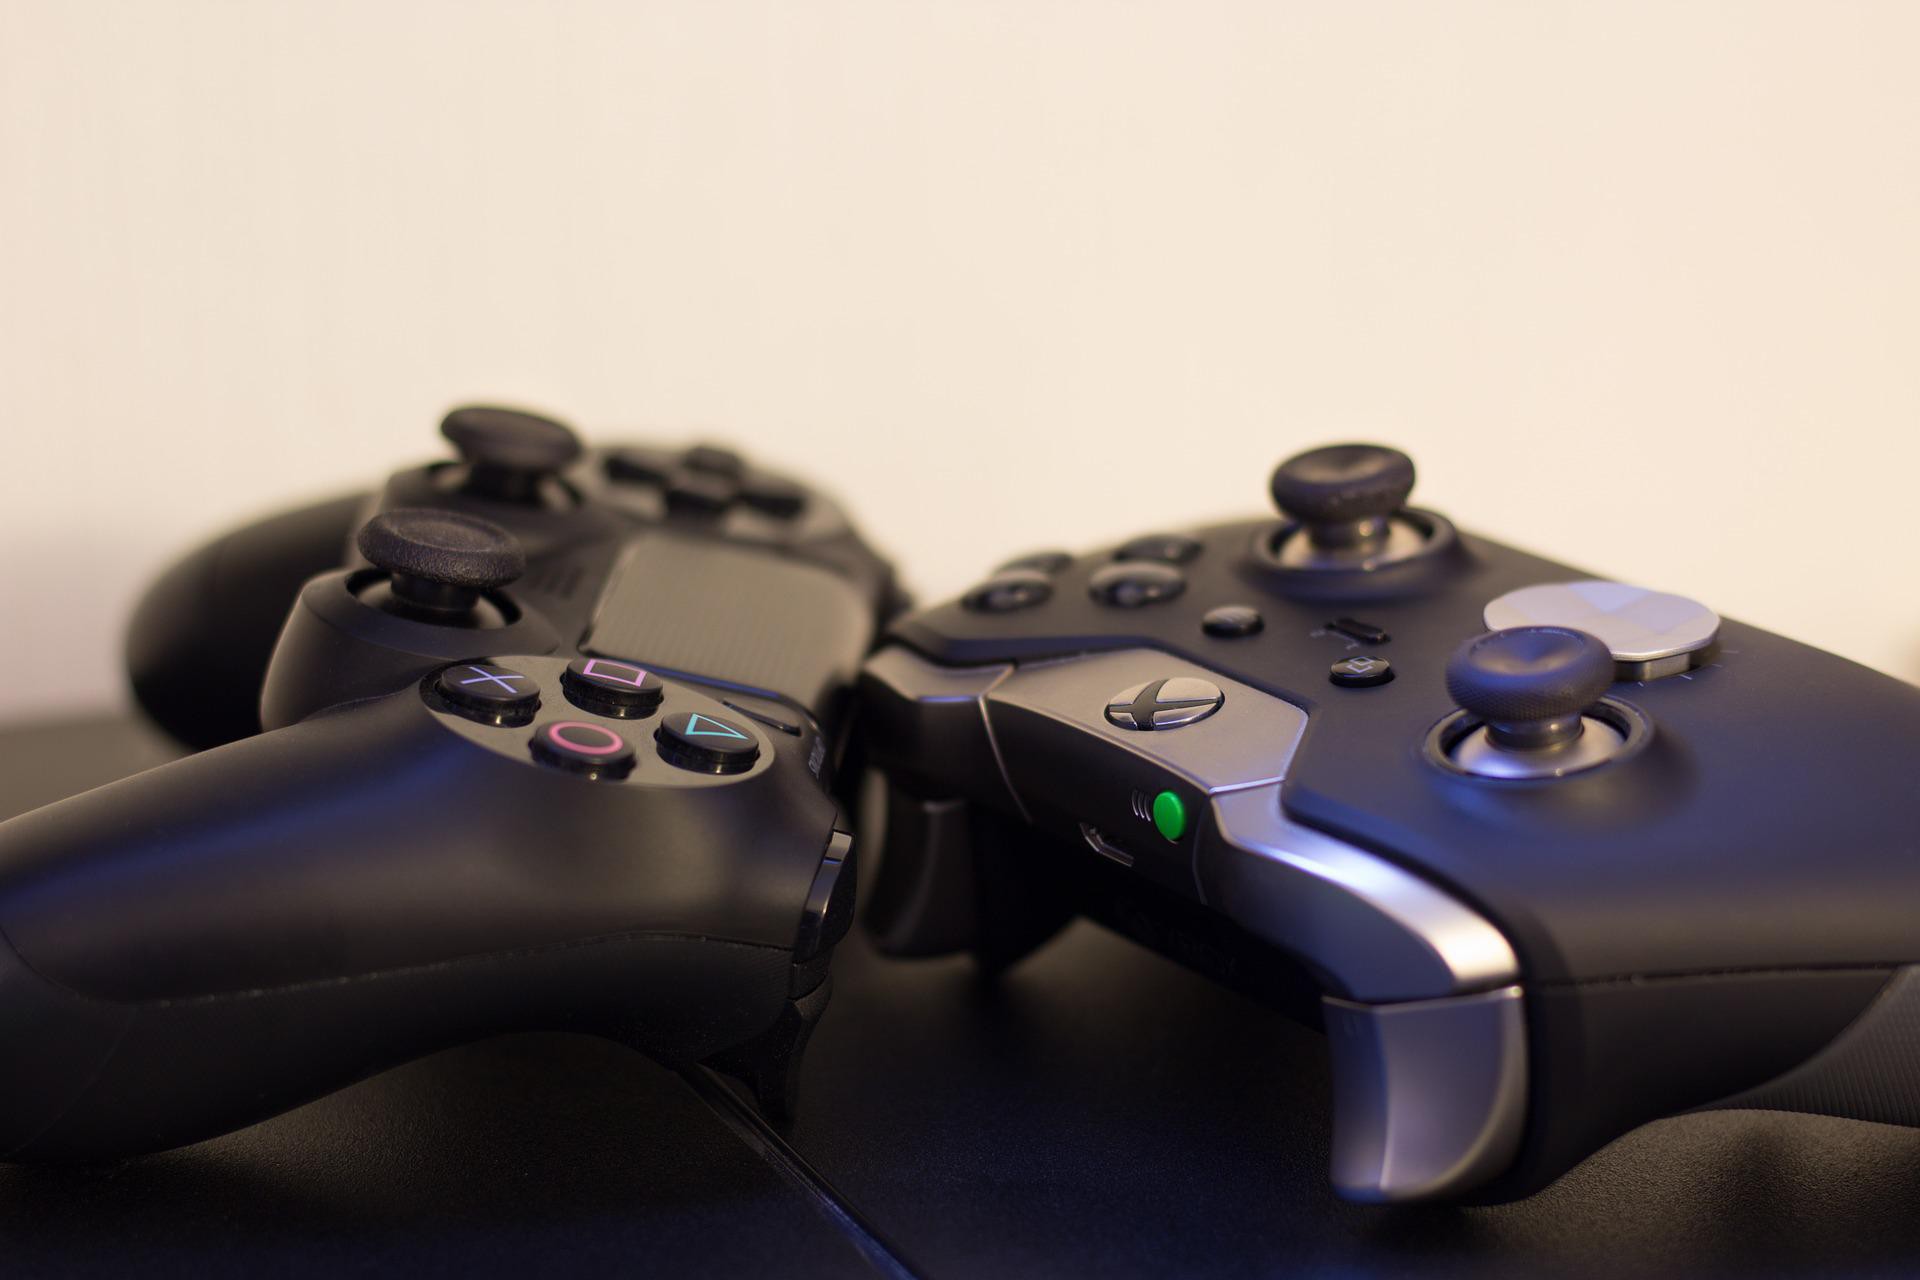 Controles dos videogames Xbox One e Playstation 4 (PS4). Imagem de apoio ilustrativo (Foto: Marko Deichmann / Pixabay)